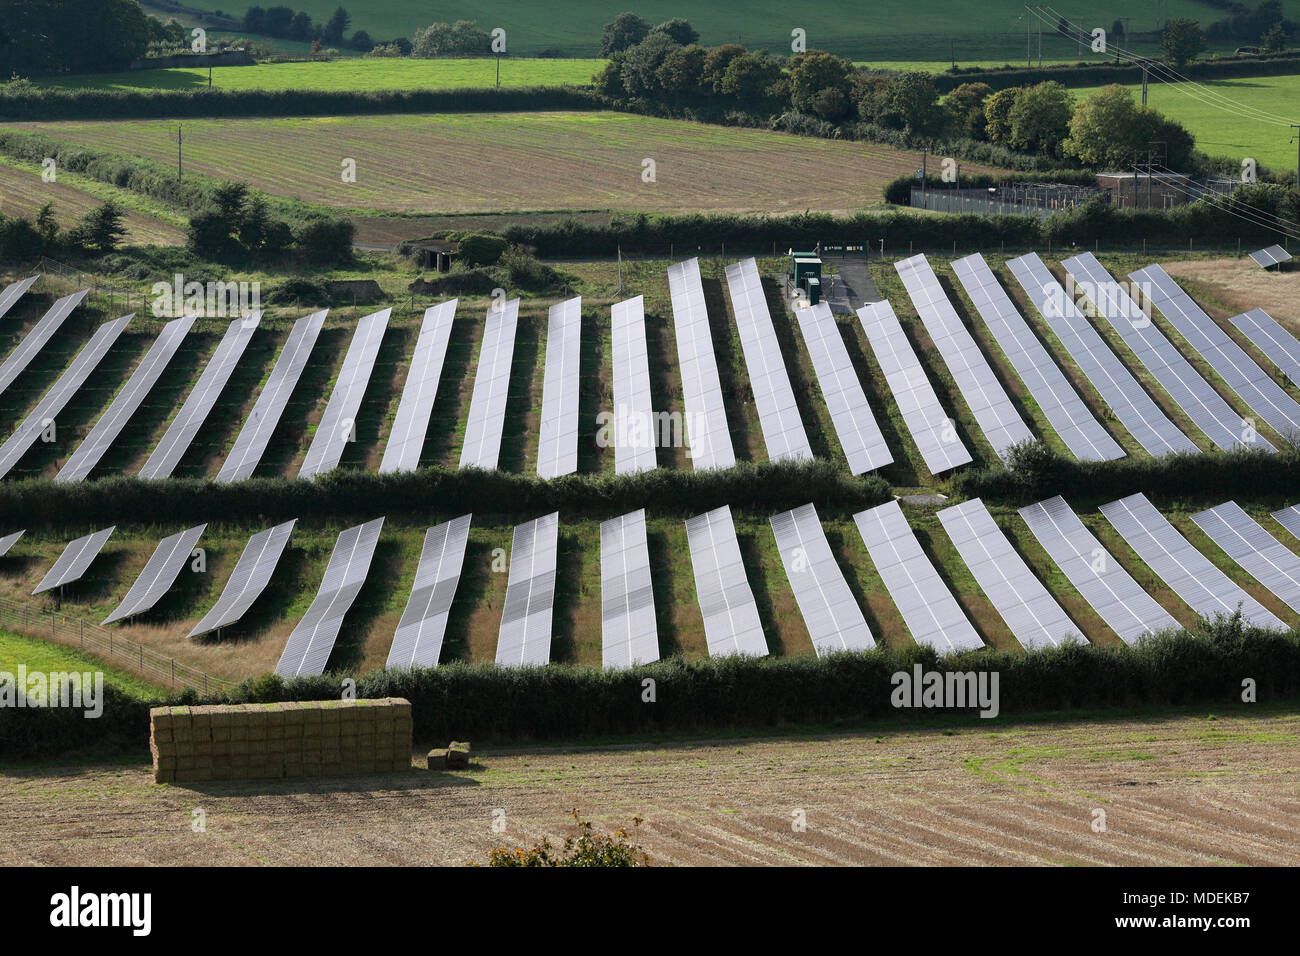 Regarder sur le des panneaux photovoltaïques qui composent la ferme solaire Port Milborne, près de Milborne Port, Somerset. Banque D'Images